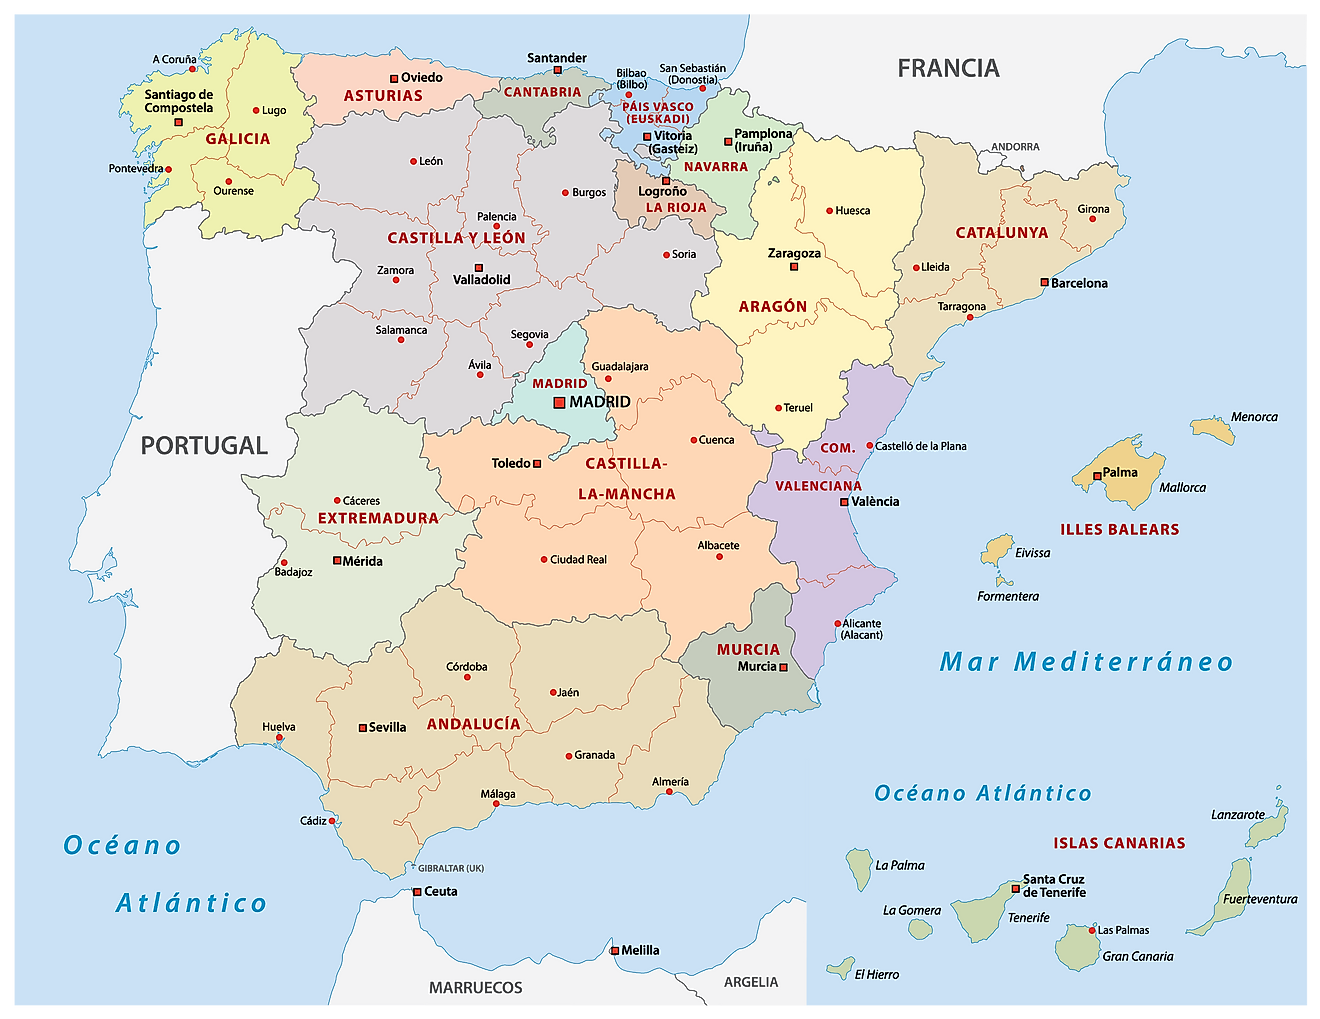 Mapa Político de España que muestra 17 comunidades autónomas y la ciudad capital de Madrid.